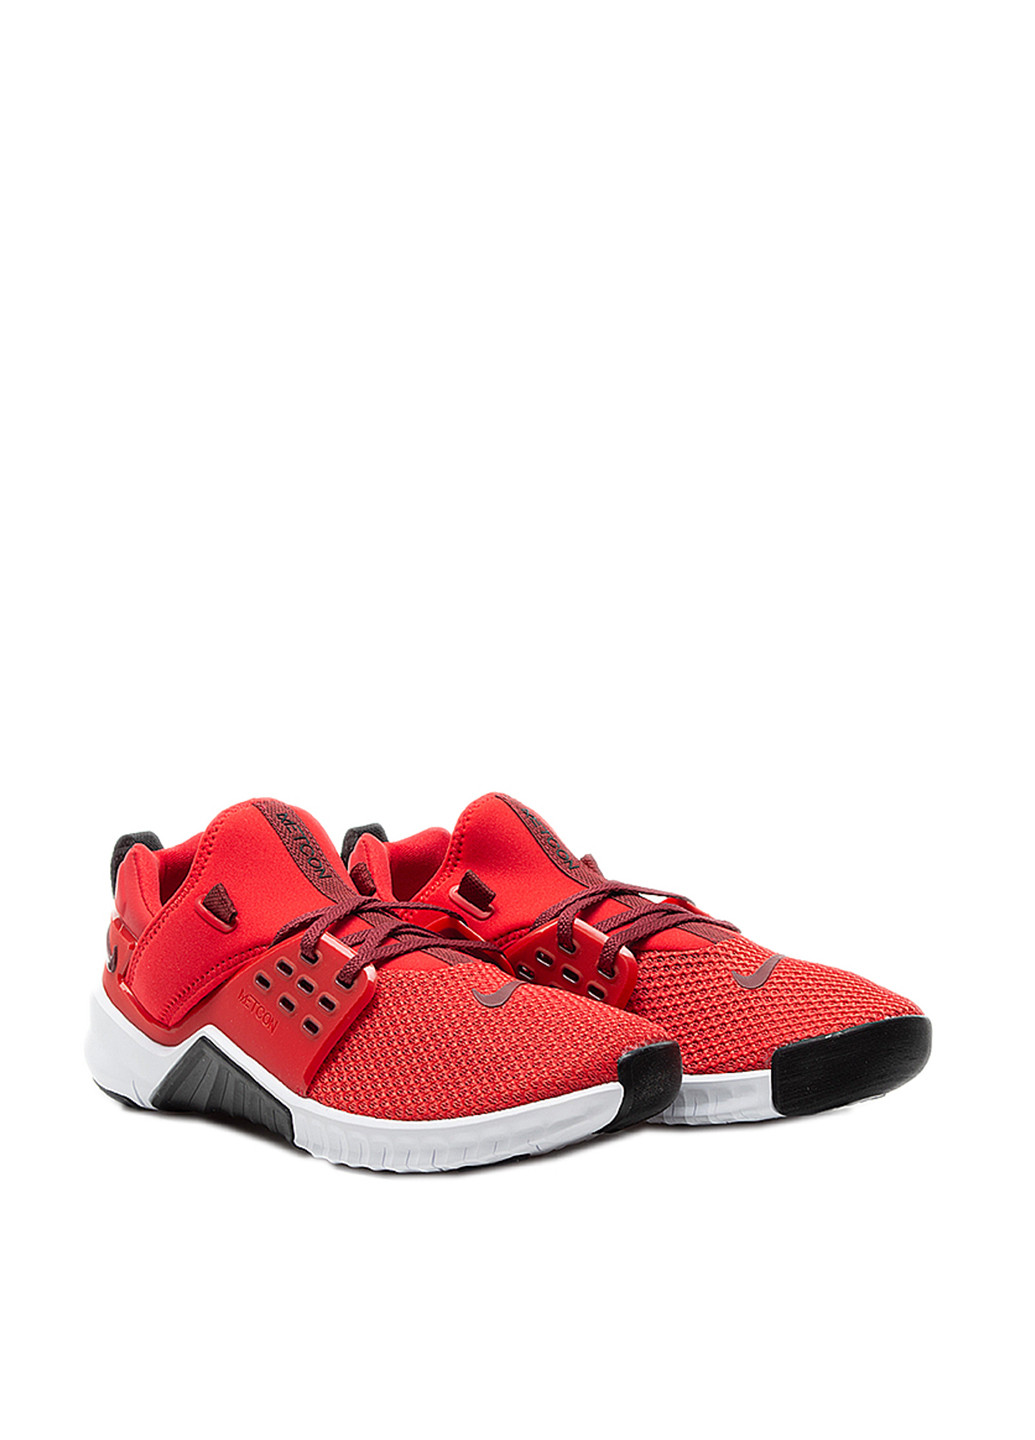 Красные всесезонные кроссовки Nike Nike Free X Metcon 2